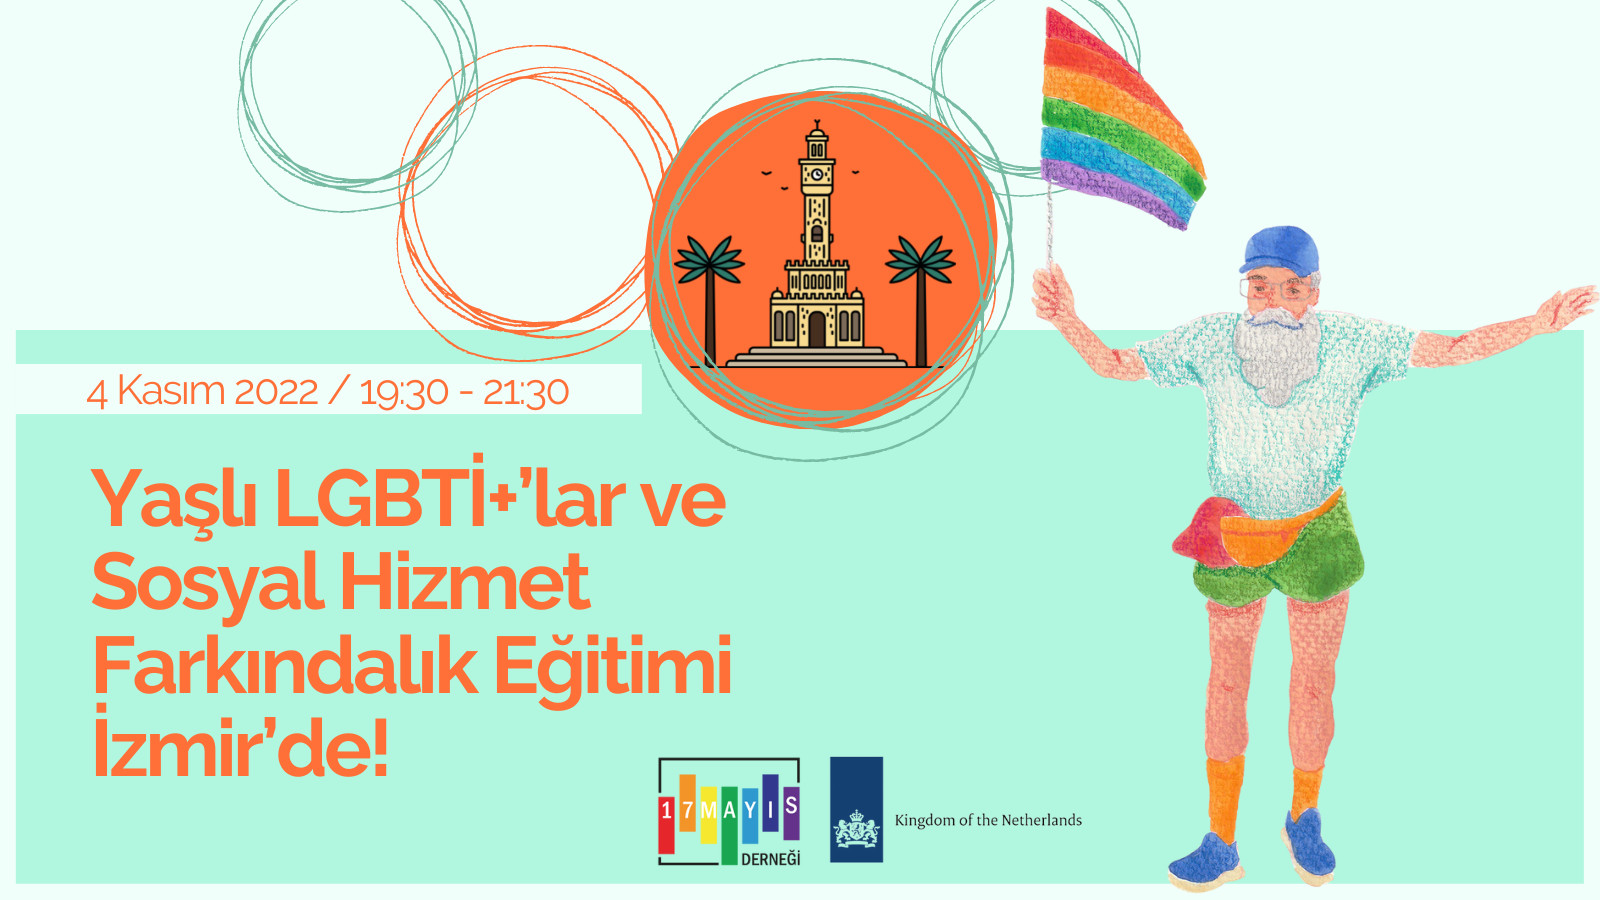 “Yaşlı LGBTİ+’lar ve Sosyal Hizmet Farkındalık Eğitimi” İzmir’de Kaos GL - LGBTİ+ Haber Portalı